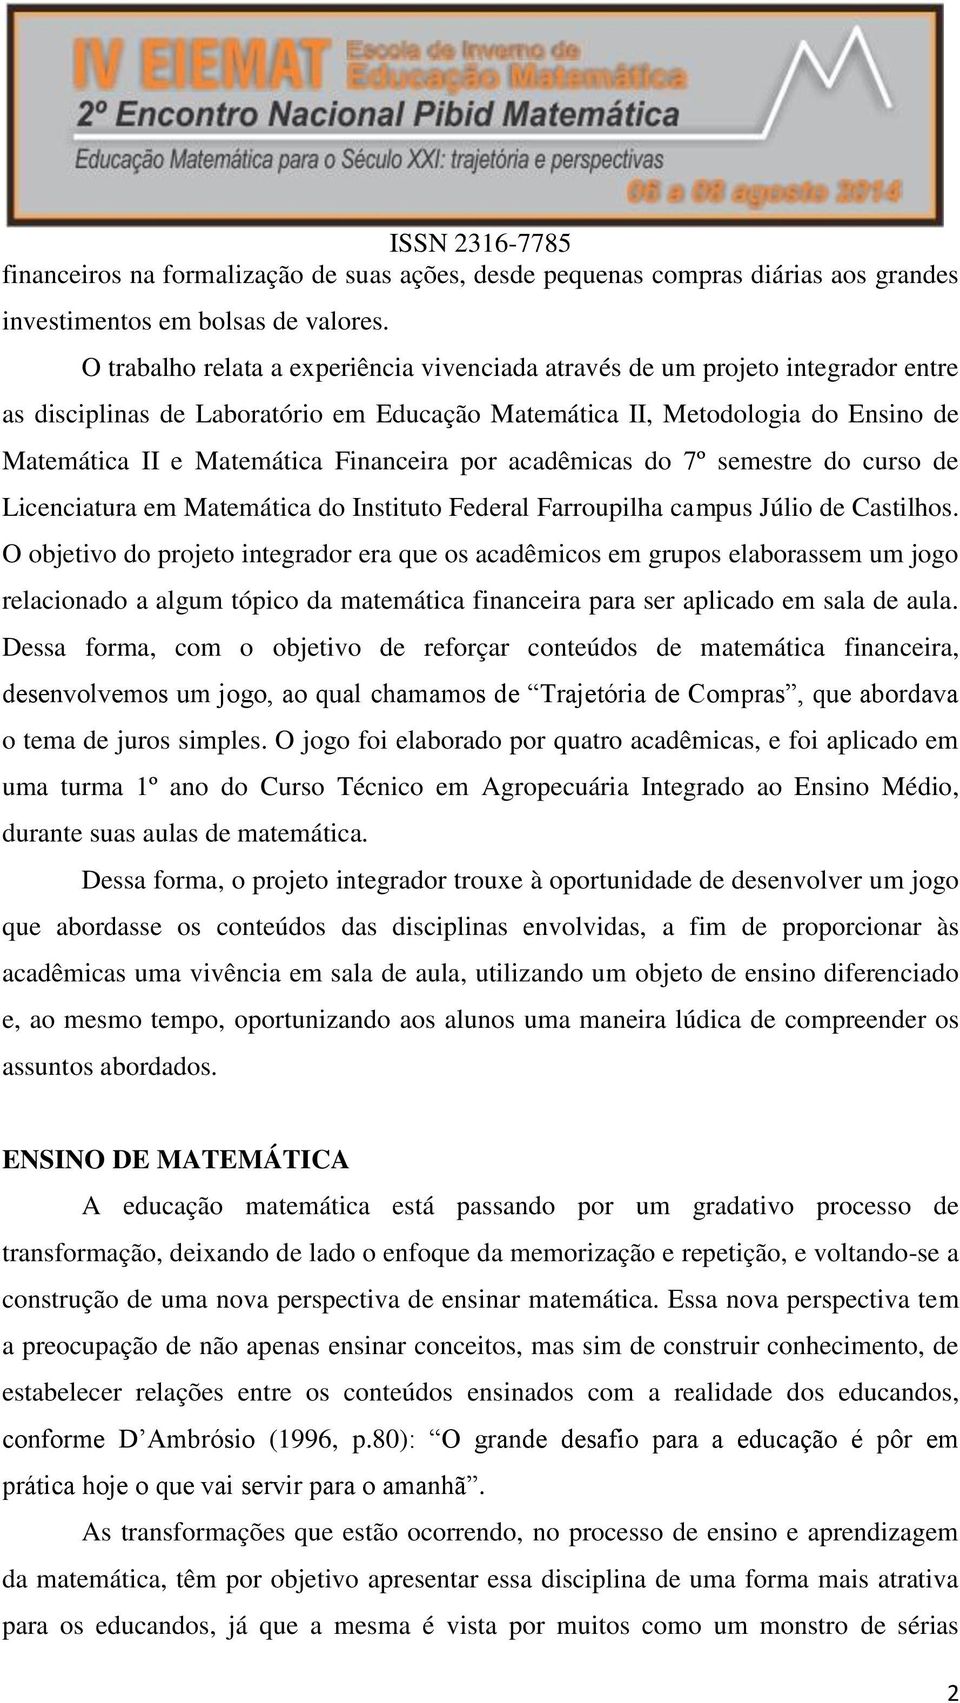 Financeira por acadêmicas do 7º semestre do curso de Licenciatura em Matemática do Instituto Federal Farroupilha campus Júlio de Castilhos.